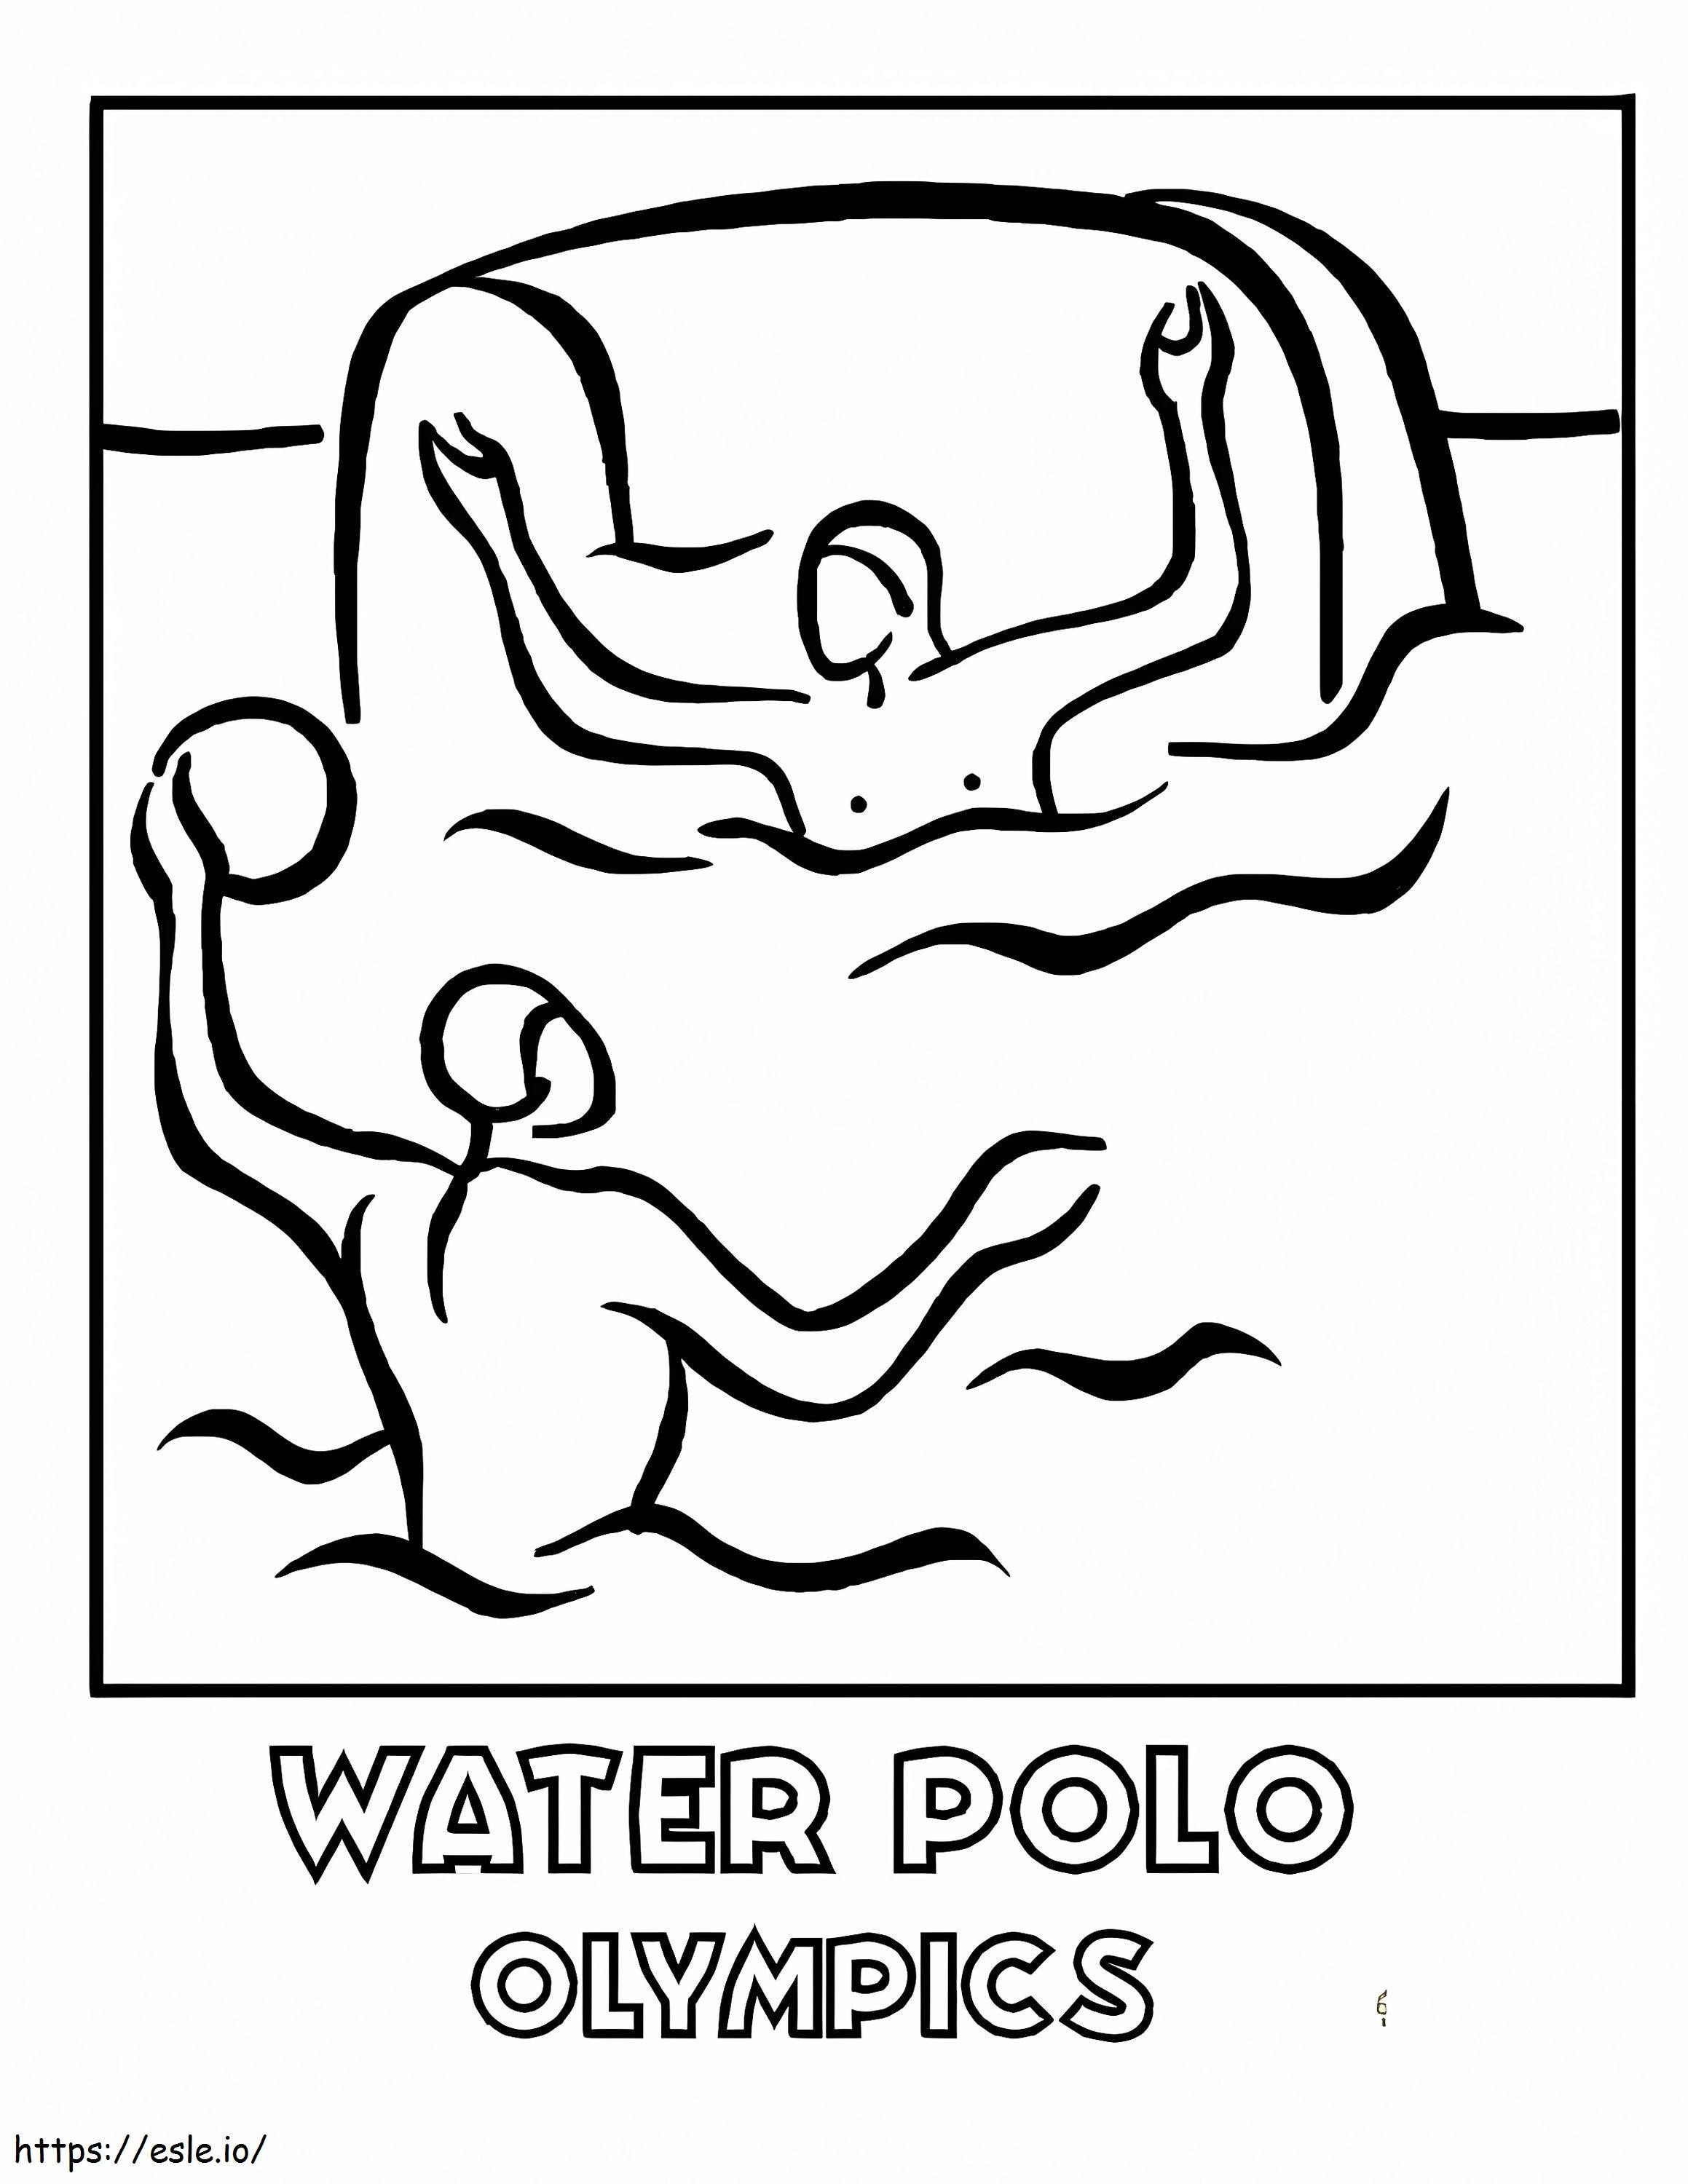 Pólo Aquático Olímpico para colorir